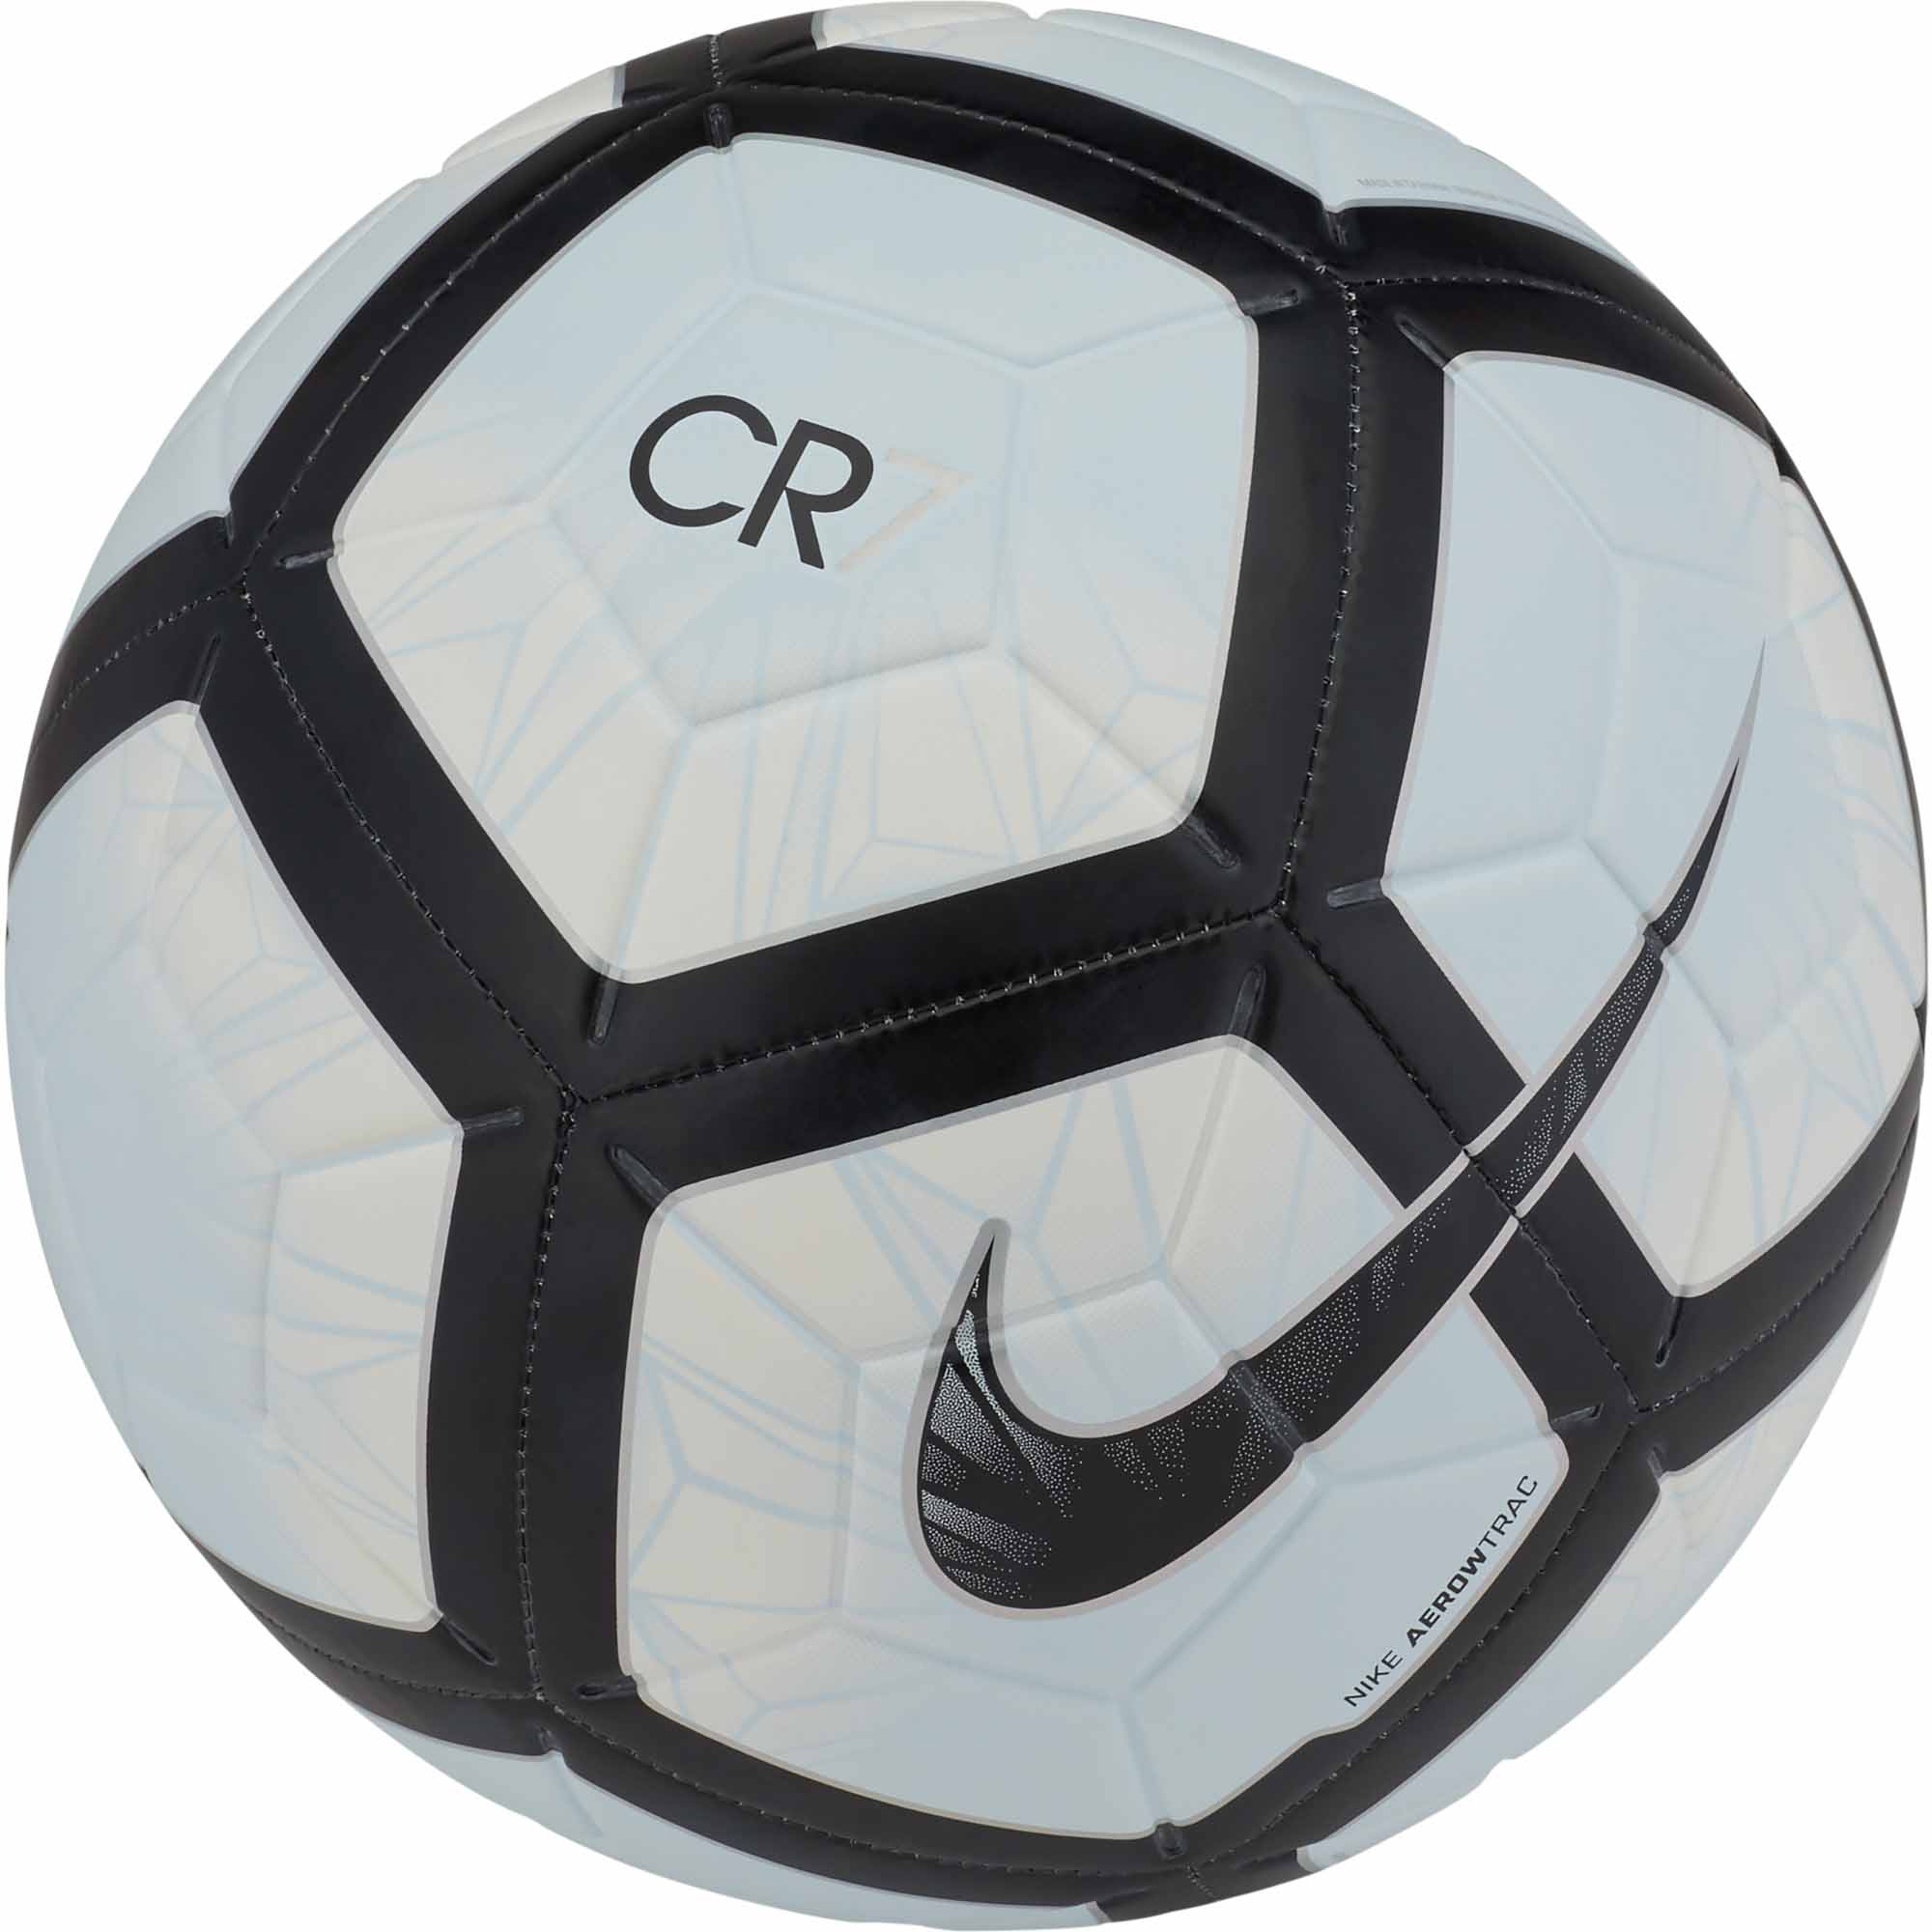 nike cr7 soccer ball